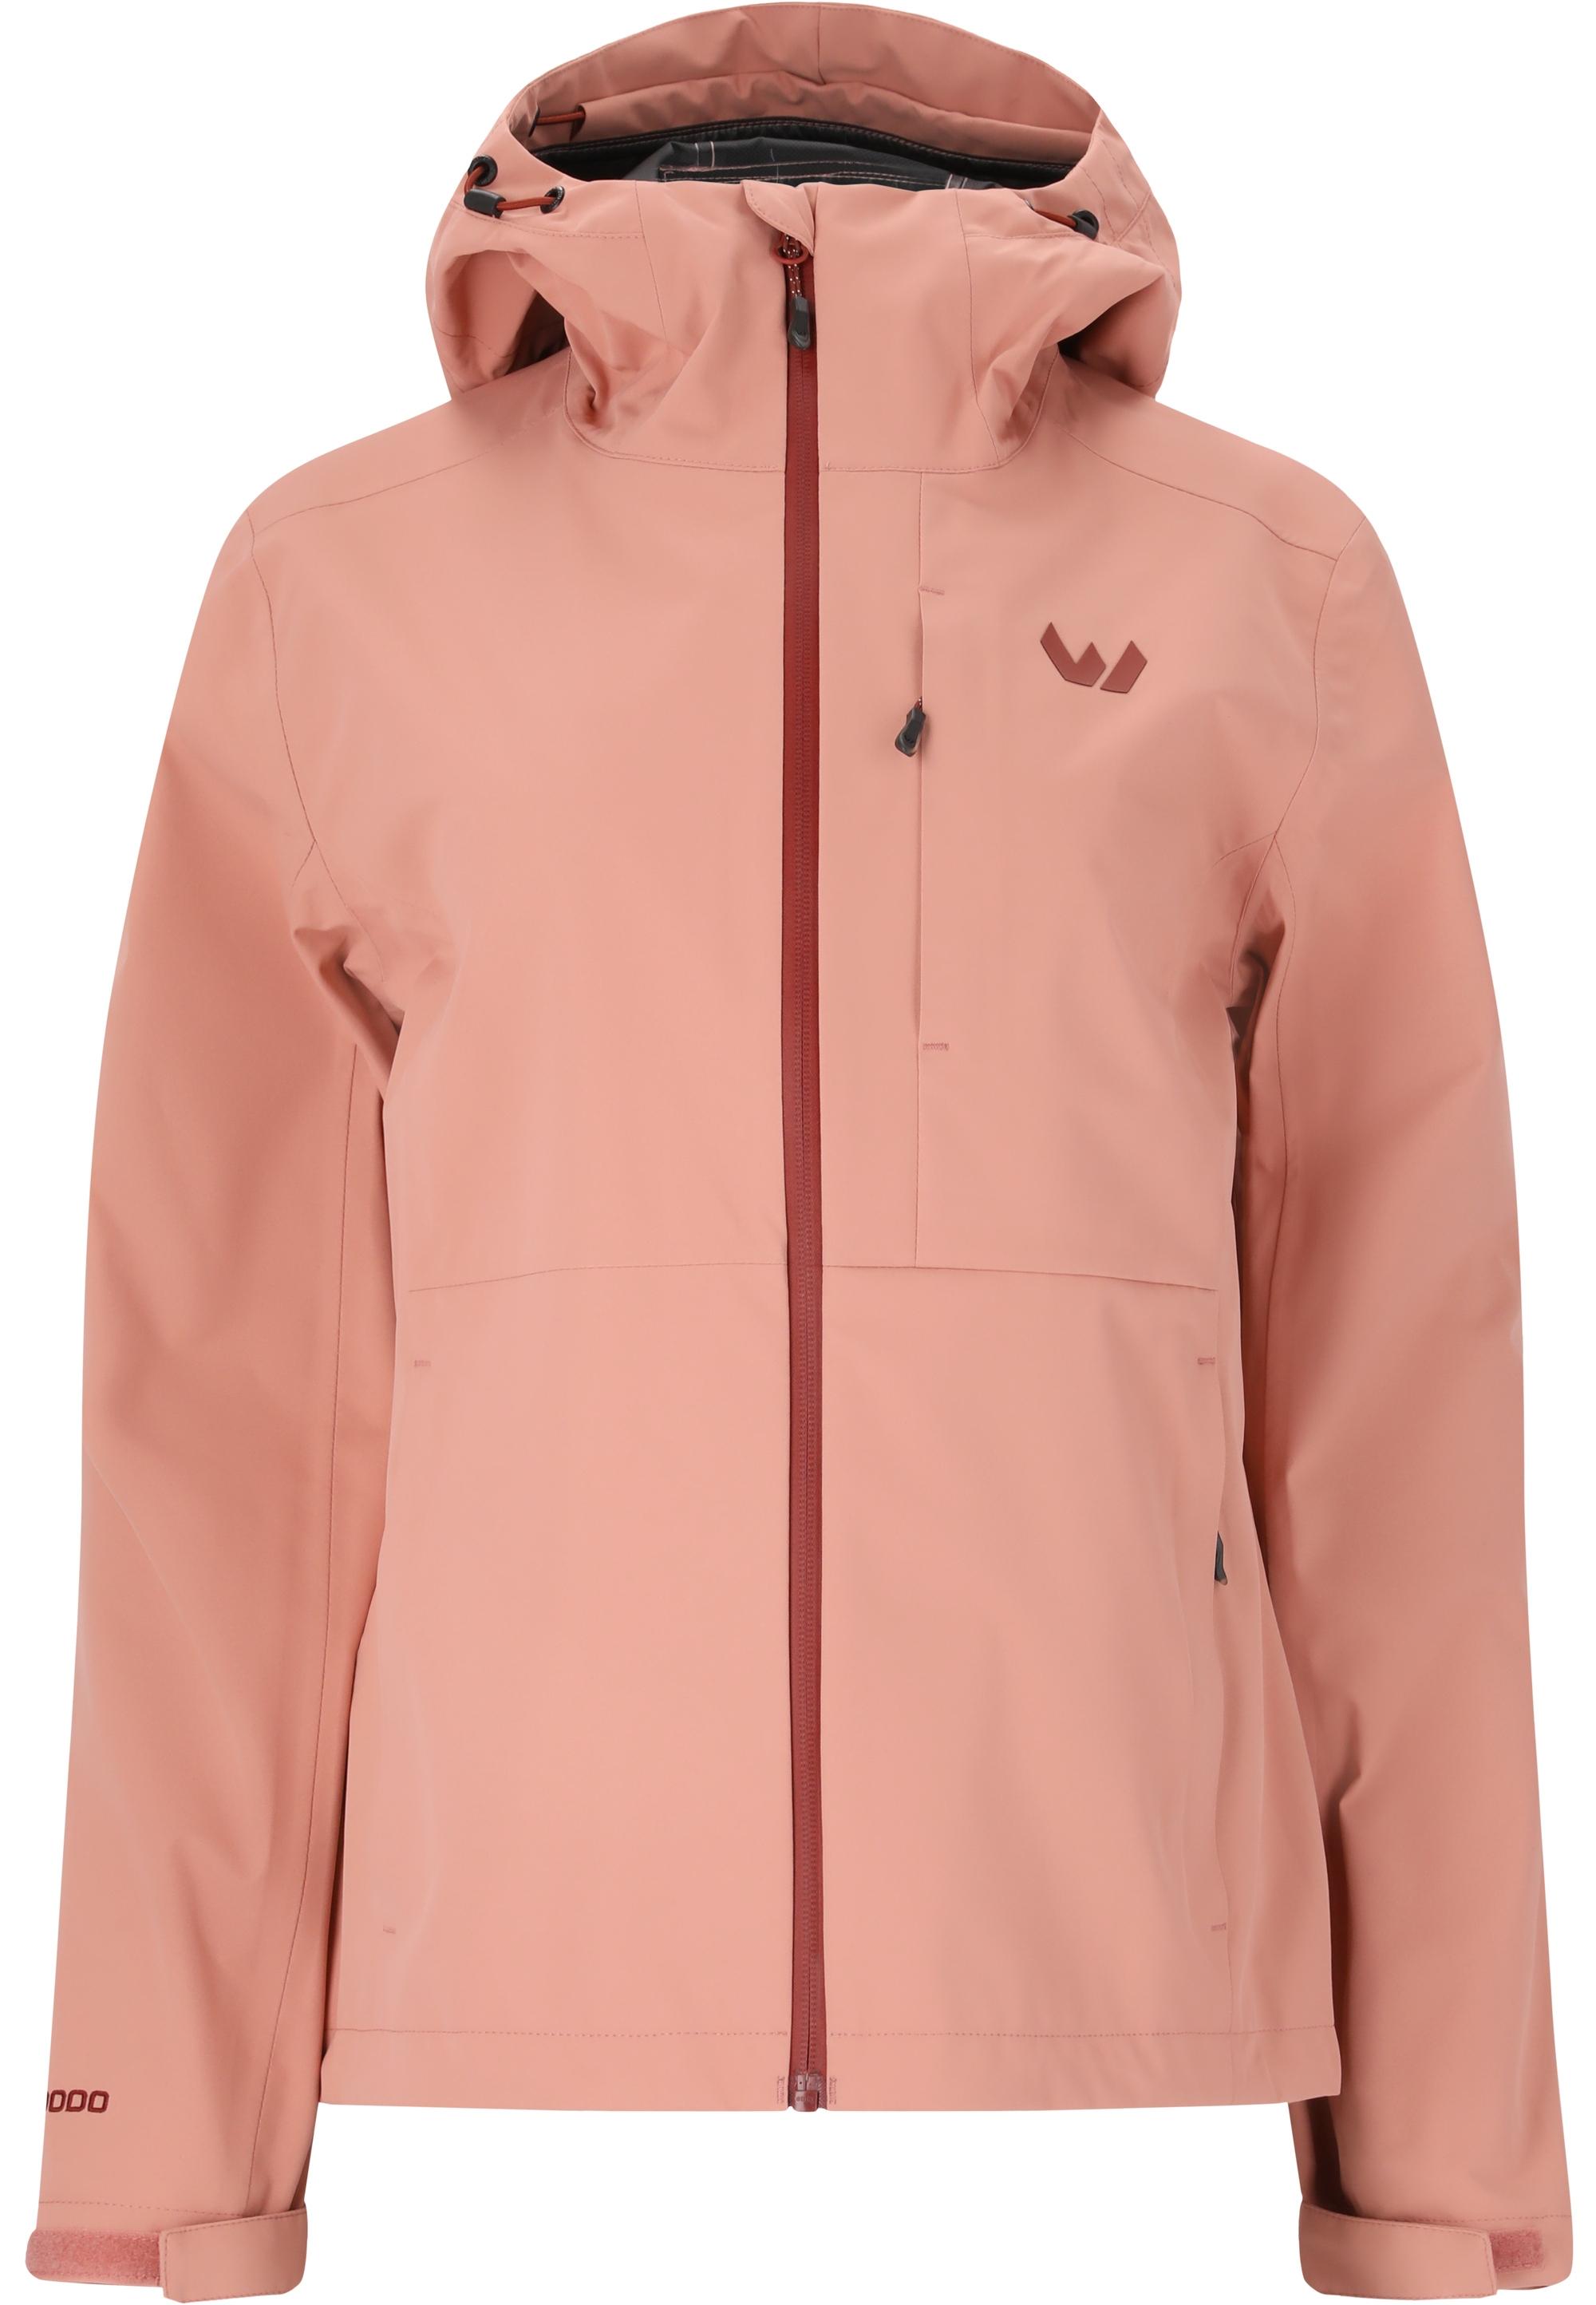 Jacken im Sale in rosa im Online Shop von SportScheck kaufen